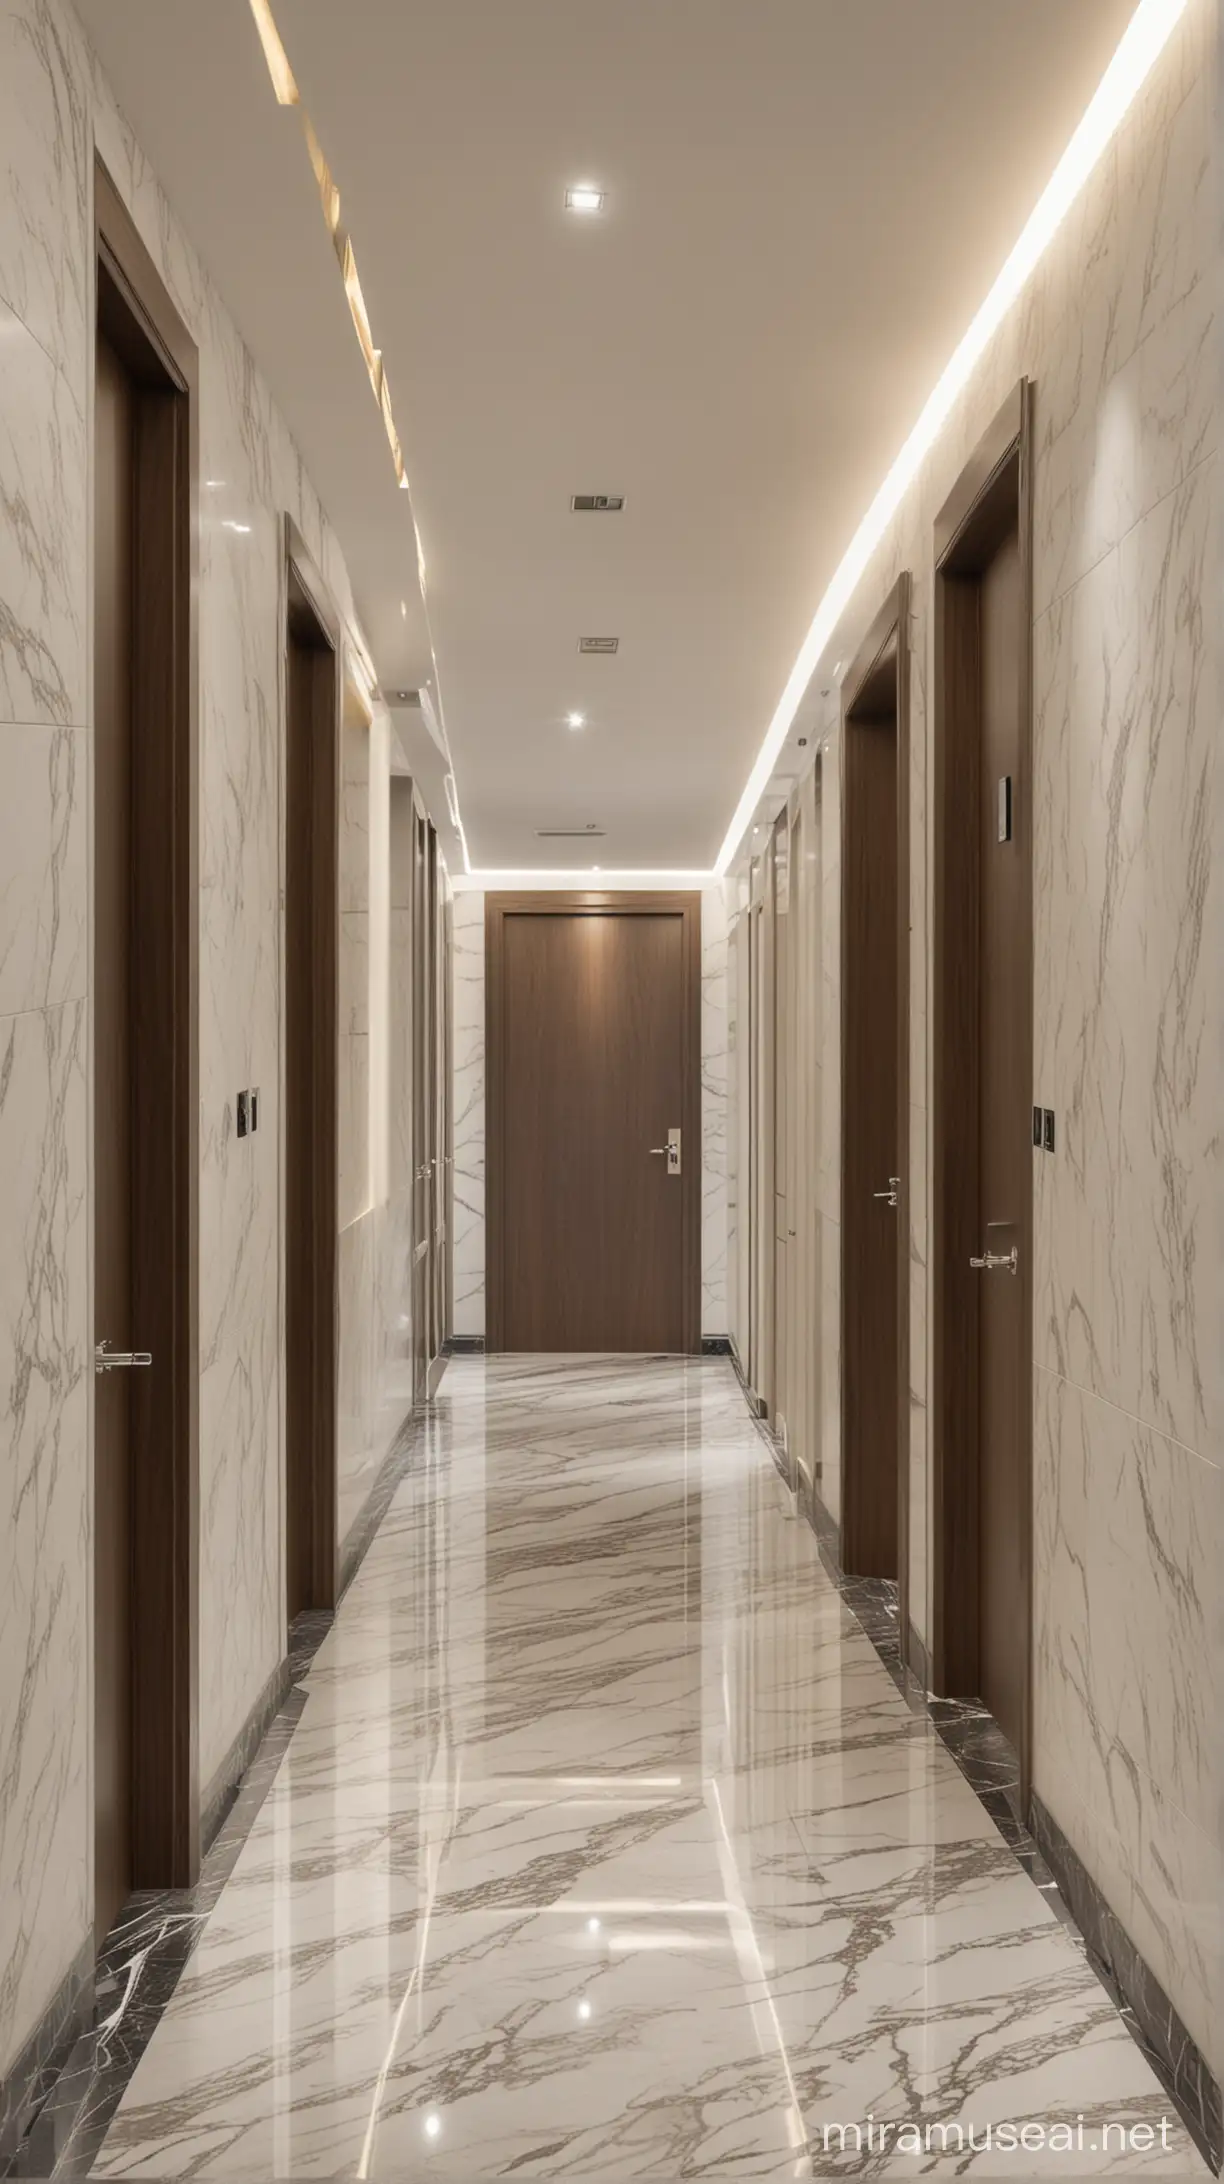 corridor , walls panels with design,including doors,marble floor ,modern ceiling